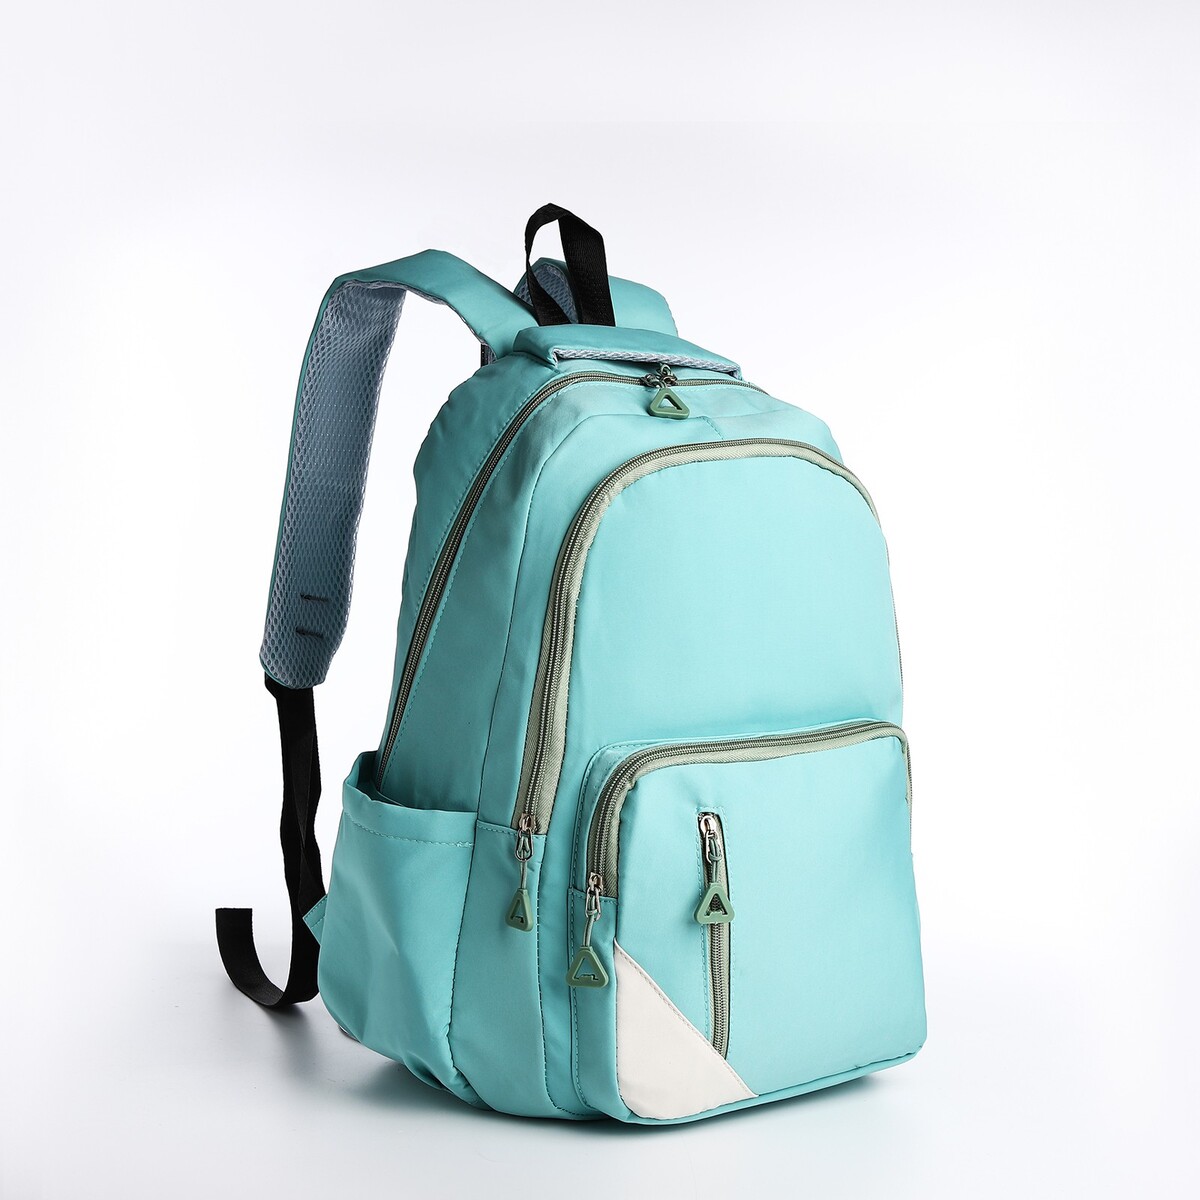 Рюкзак молодежный из текстиля, 2 отдела, 3 кармана, цвет бирюзовый рюкзак школьный из текстиля 3 кармана бирюзовый